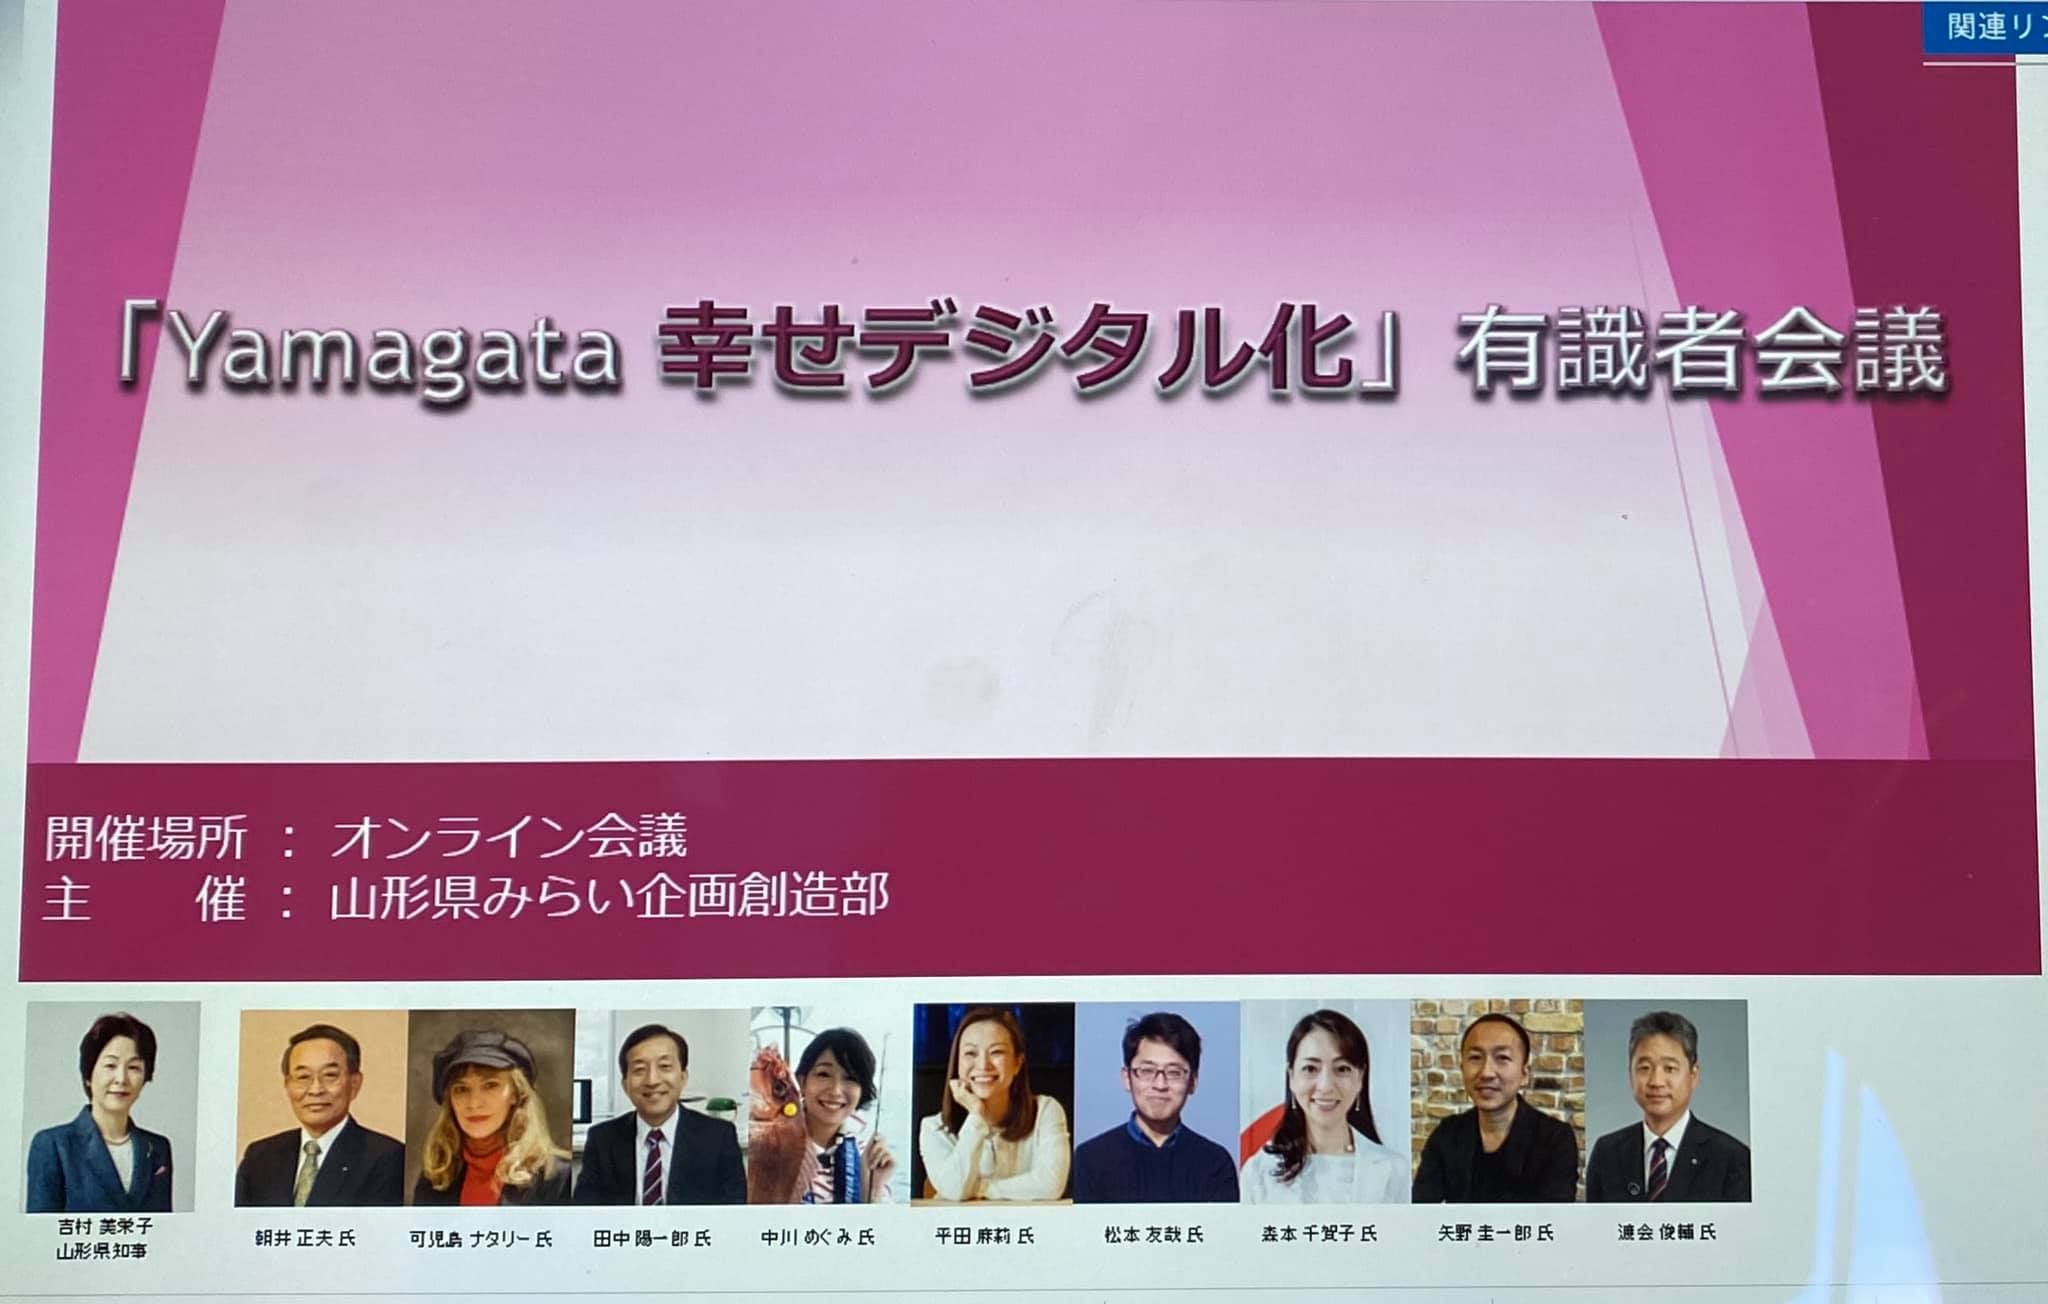 新たなチャレンジ『Yamagata 幸せデジタル化構想』有識者委員会委員に